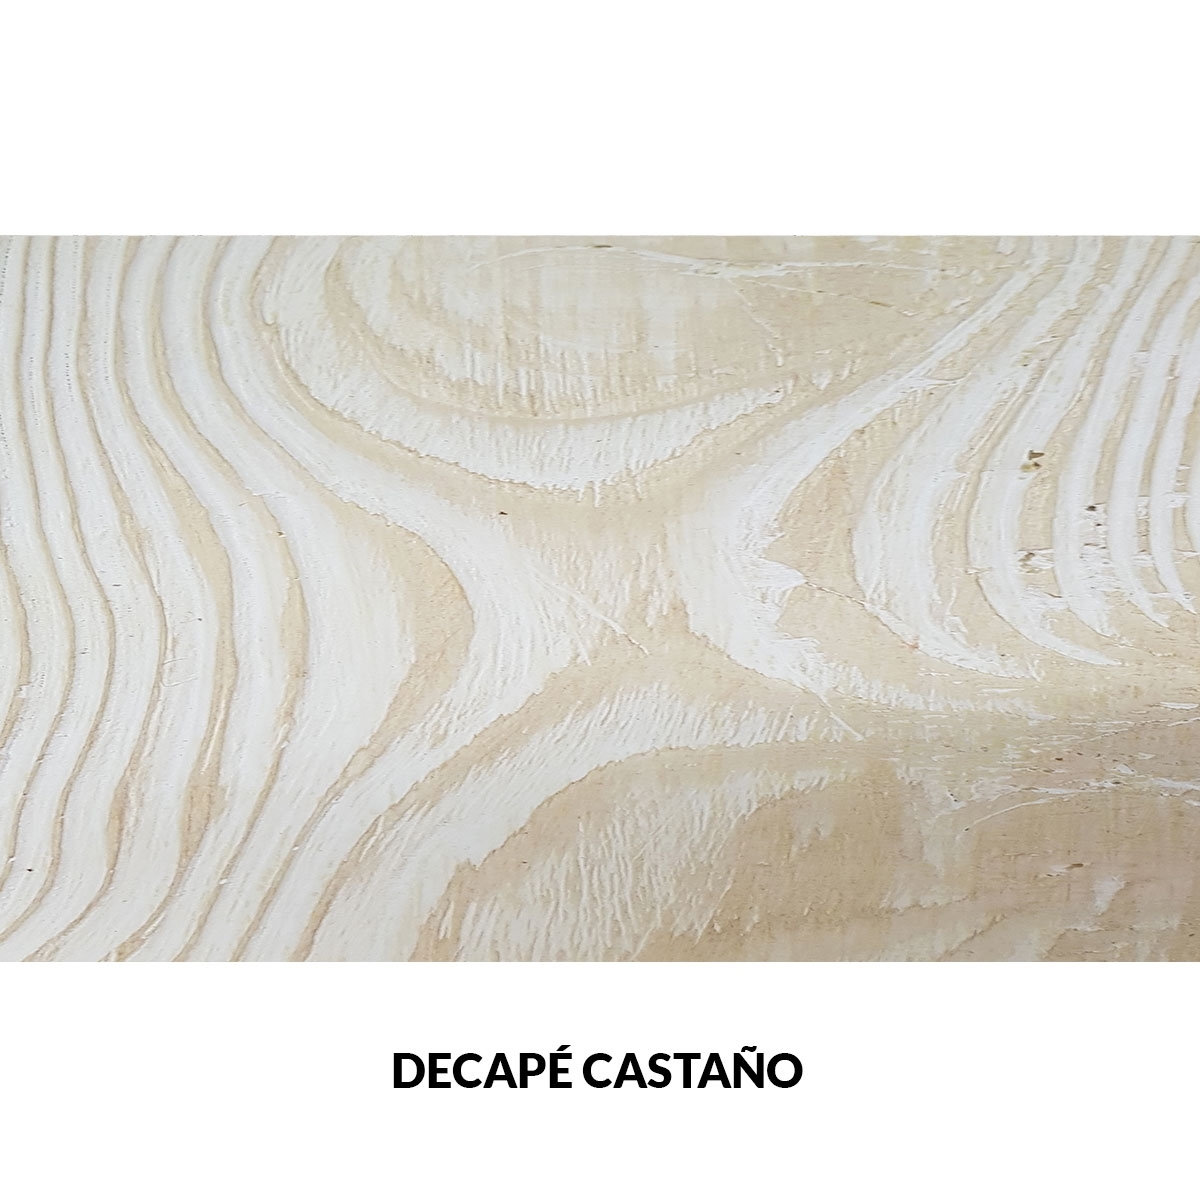 Panel rústico sin lamas imitación madera de 300x62cm decape castaño